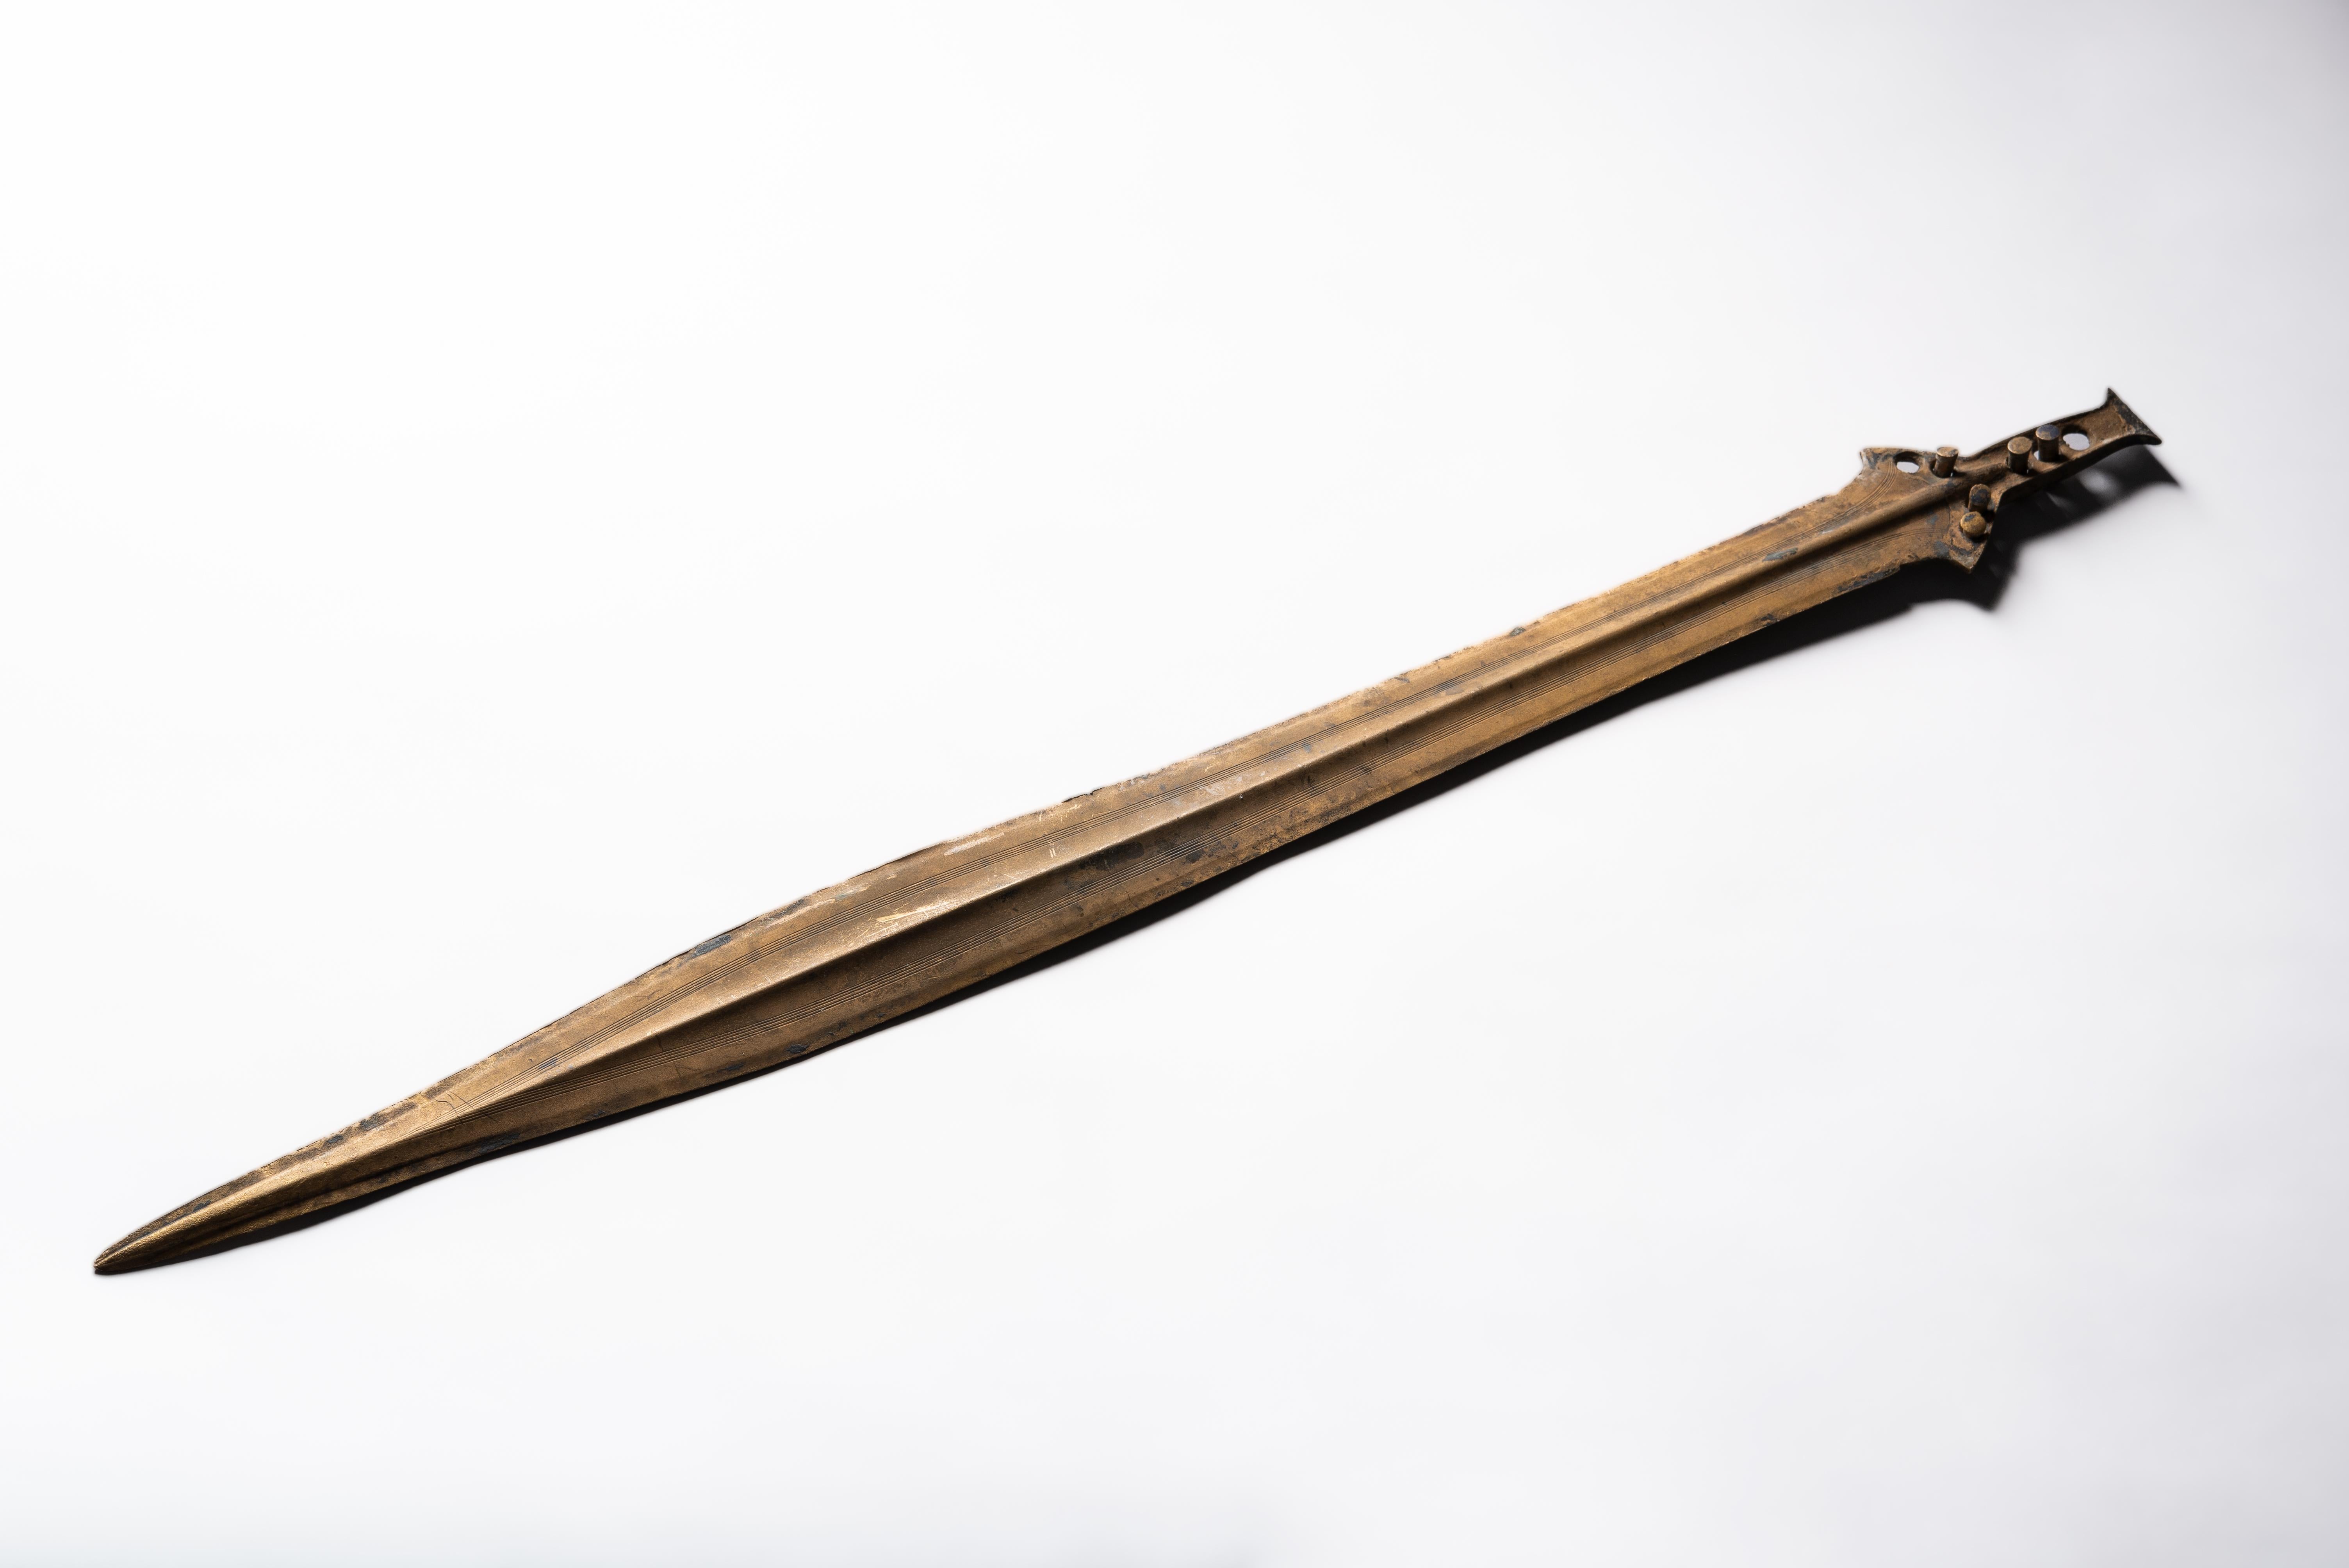 Schwert von Saint Nazaire, Spätbronzezeit, ca. 800-900 v. Chr.

Ein außergewöhnlich gut erhaltenes Schwert aus der Bronzezeit, mit eleganten, fein eingeschnittenen Verzierungen, nahezu perfekter Form und einer wunderbaren, goldenen Patina. Diese